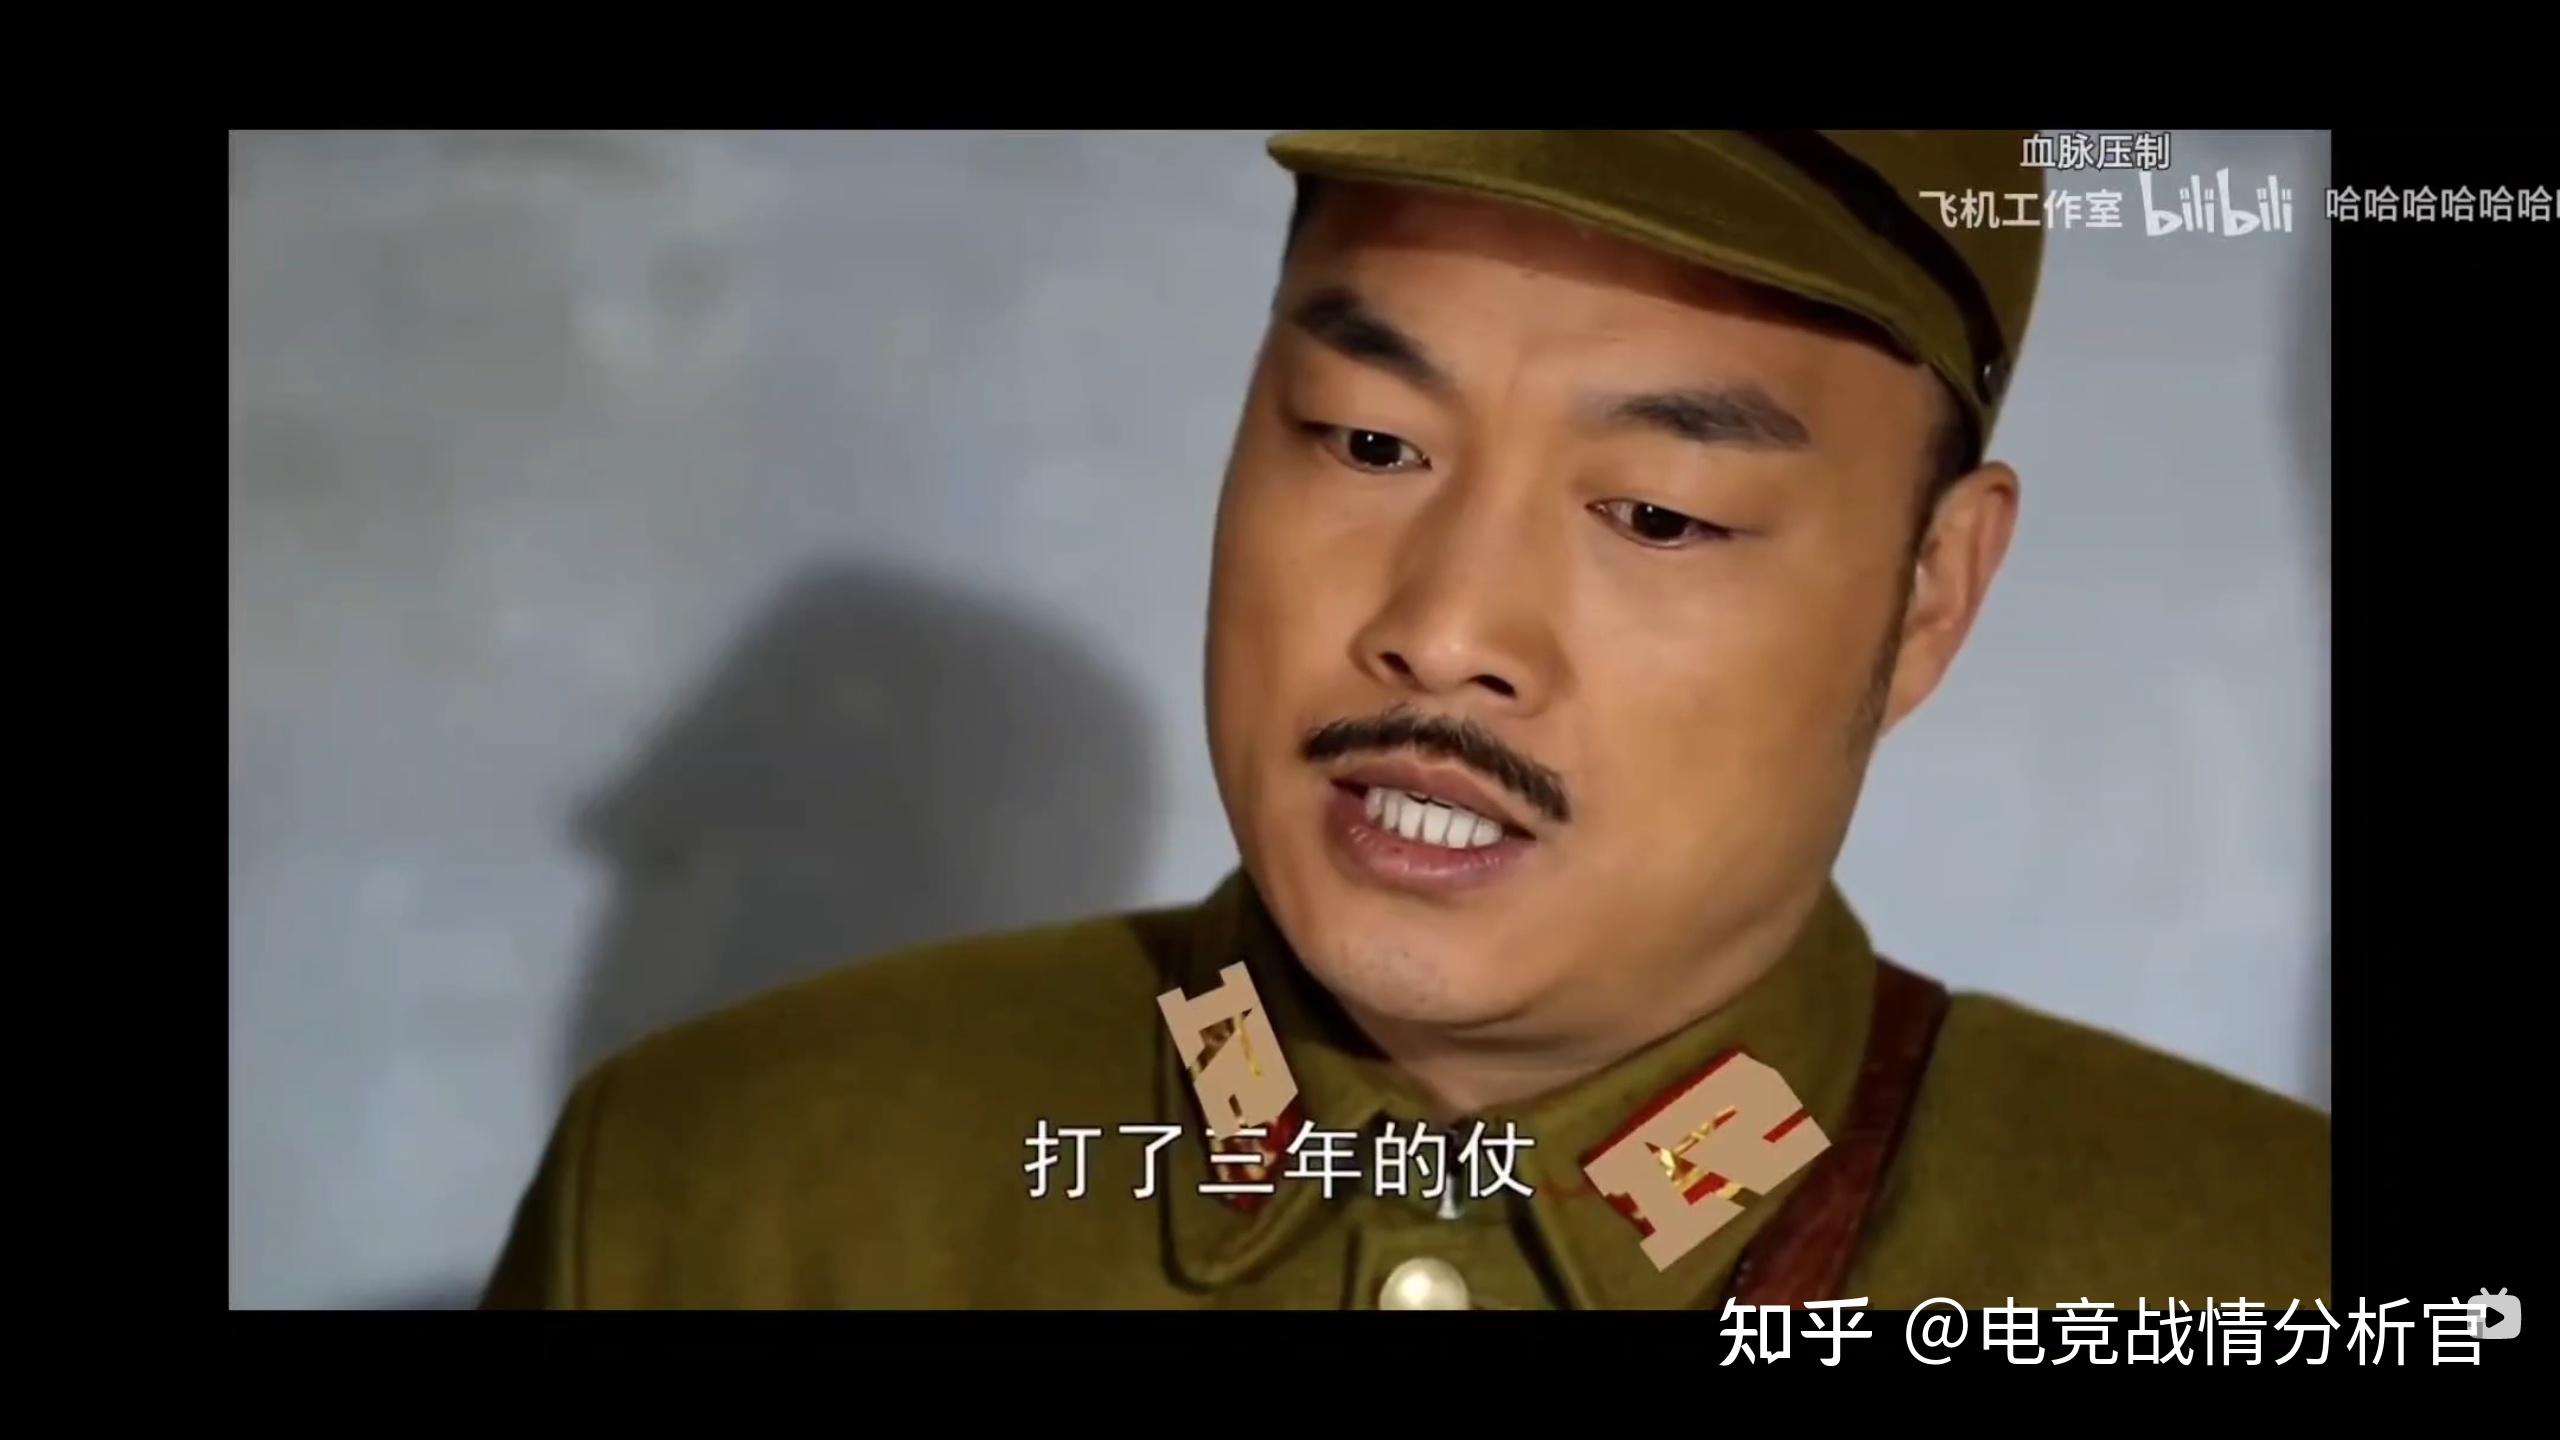 如下图,视频作者为日本皇军p上两个rng的队标,还用原版电视剧的台词